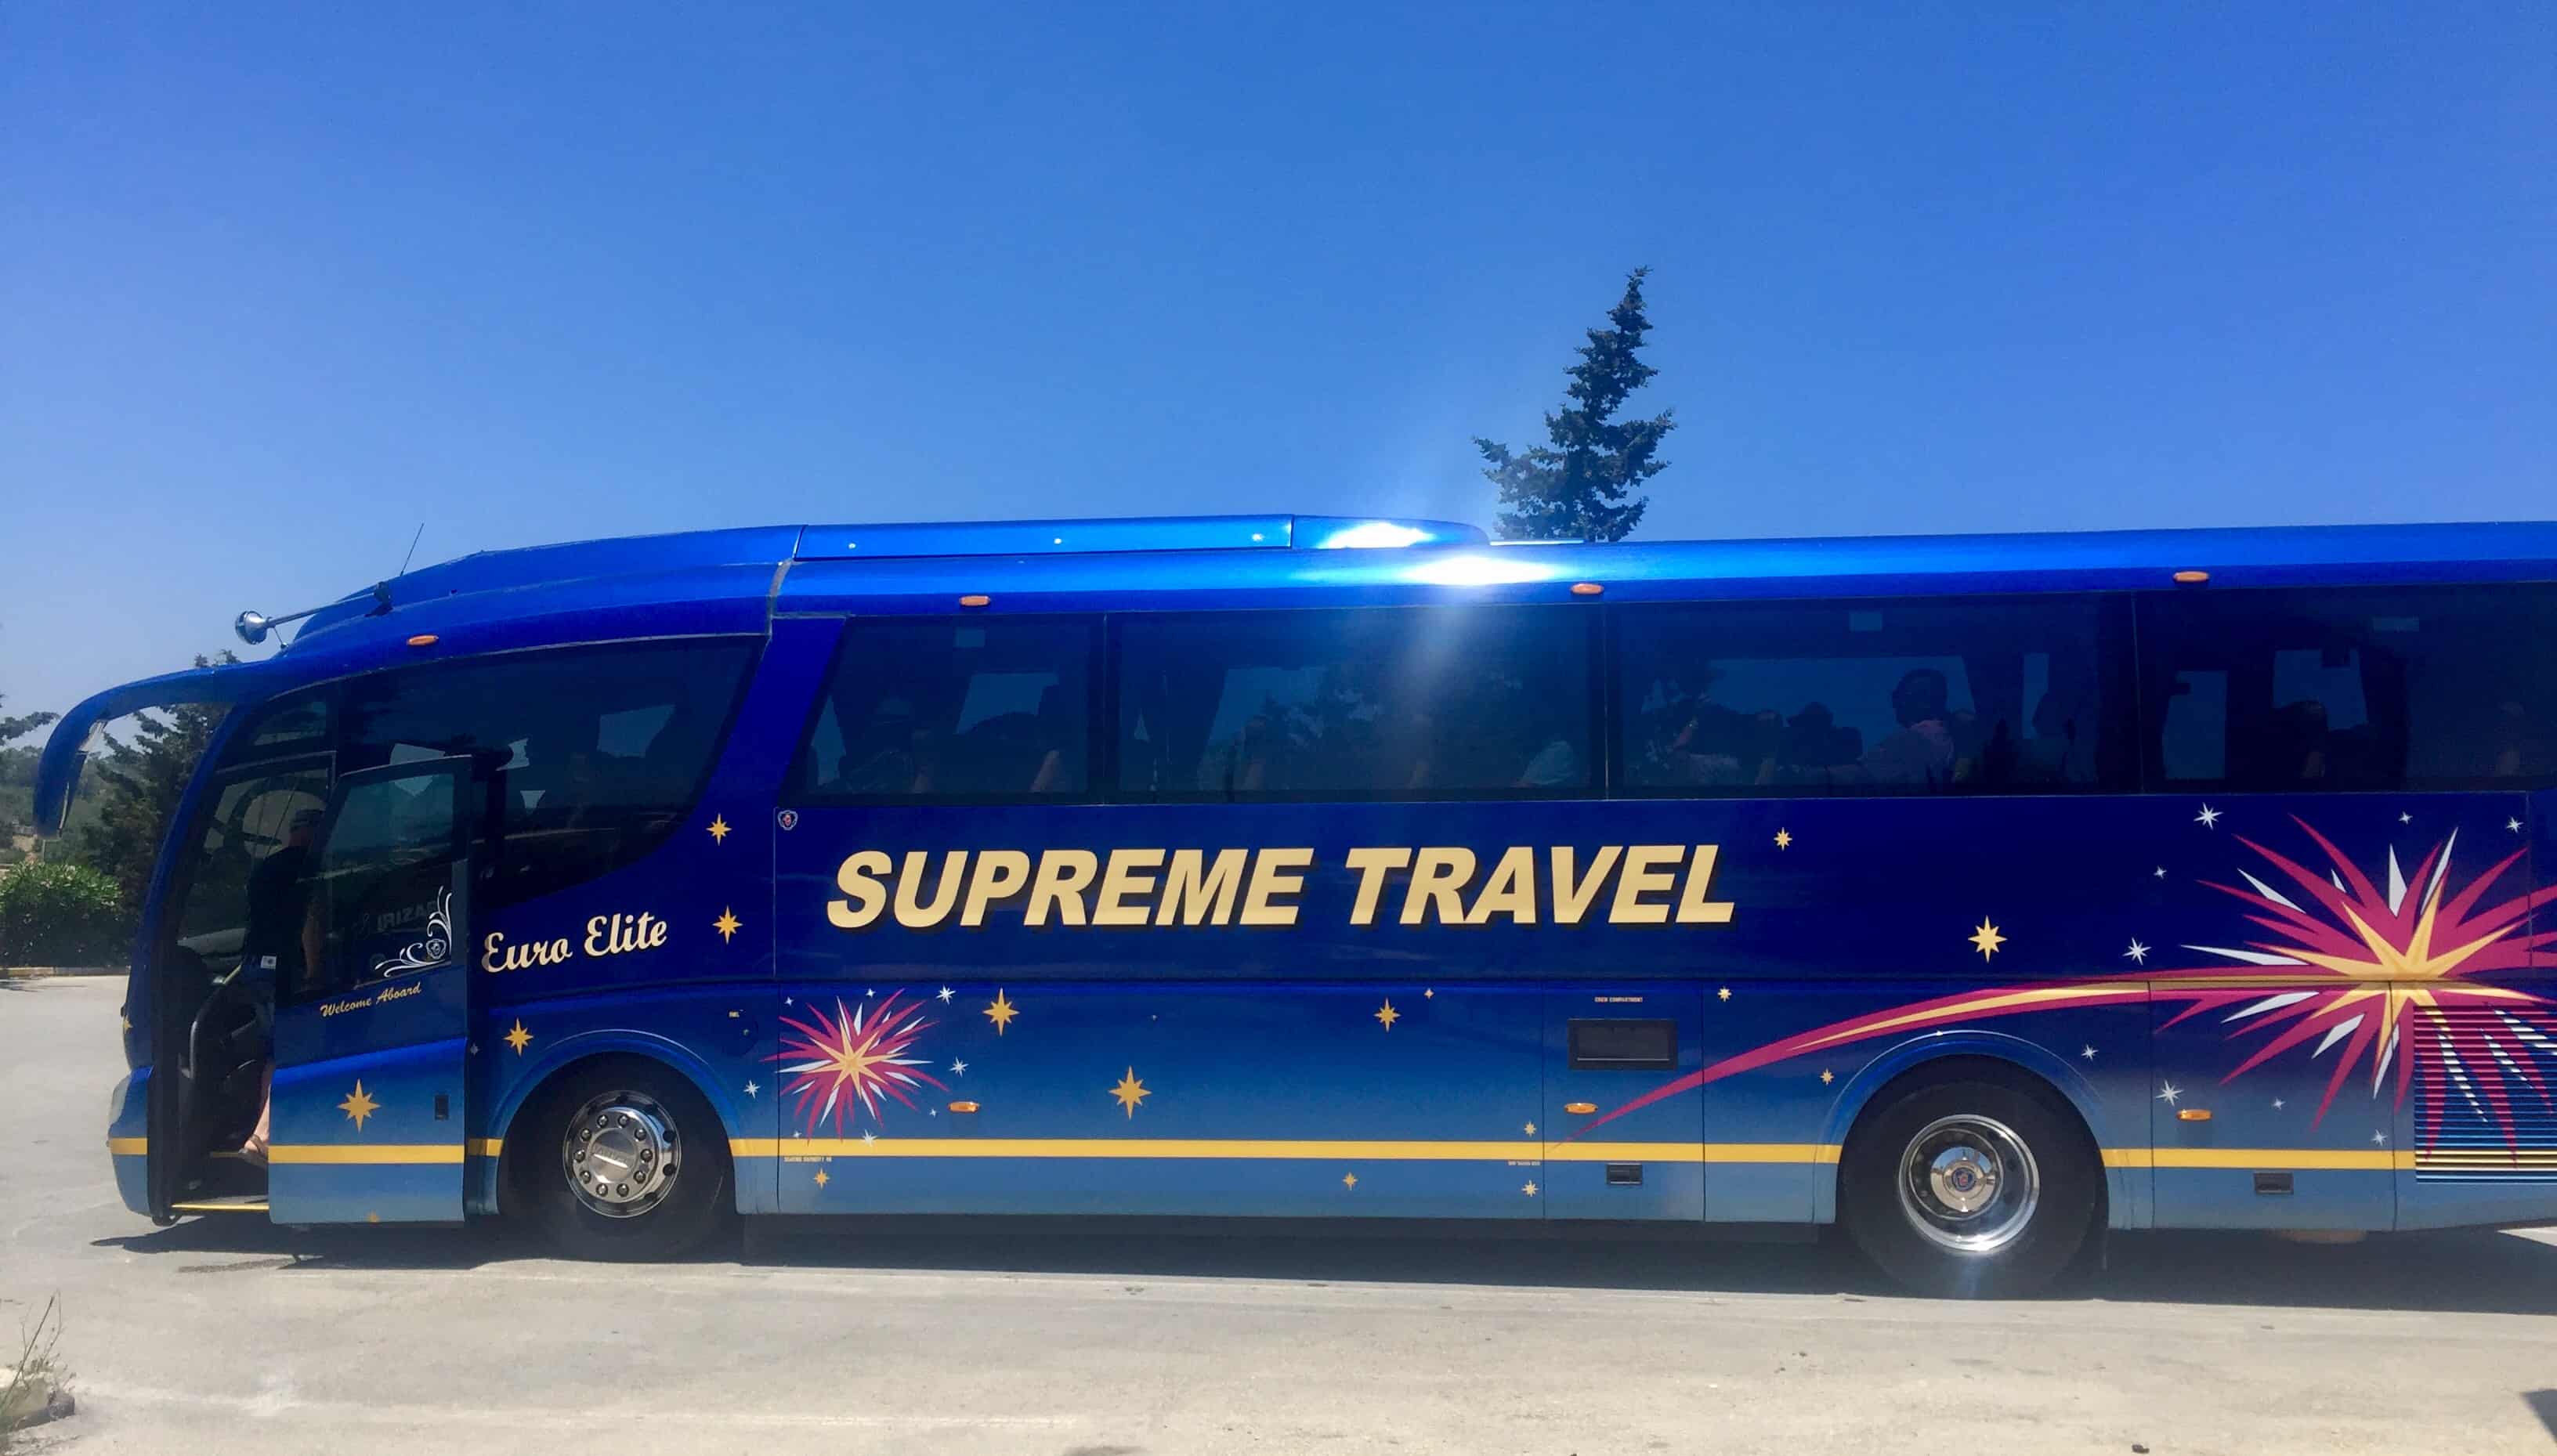 Le groupe Supreme Travel propose des visites guidées sous la marque Hello Malta